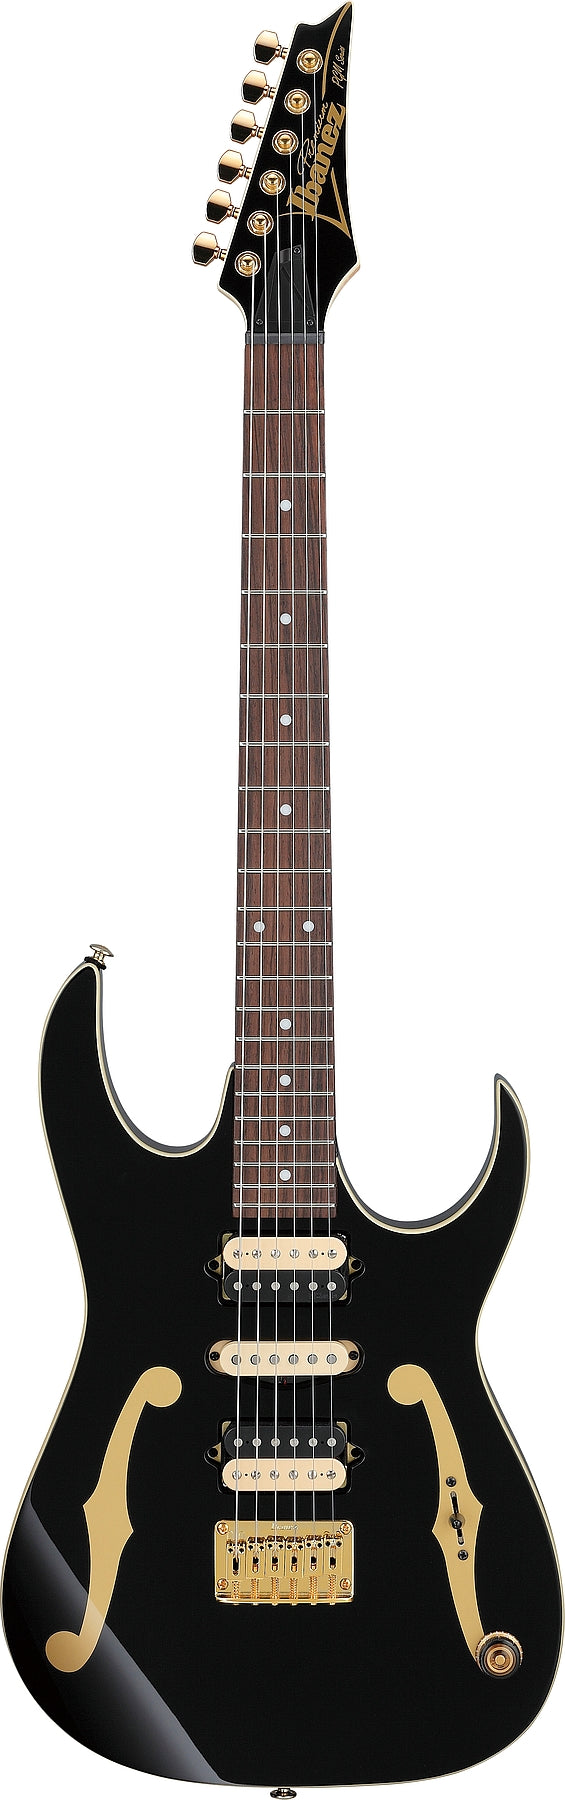 Ibanez PGM50BK Paul Gilbert Signature Electric Guitar (Black)